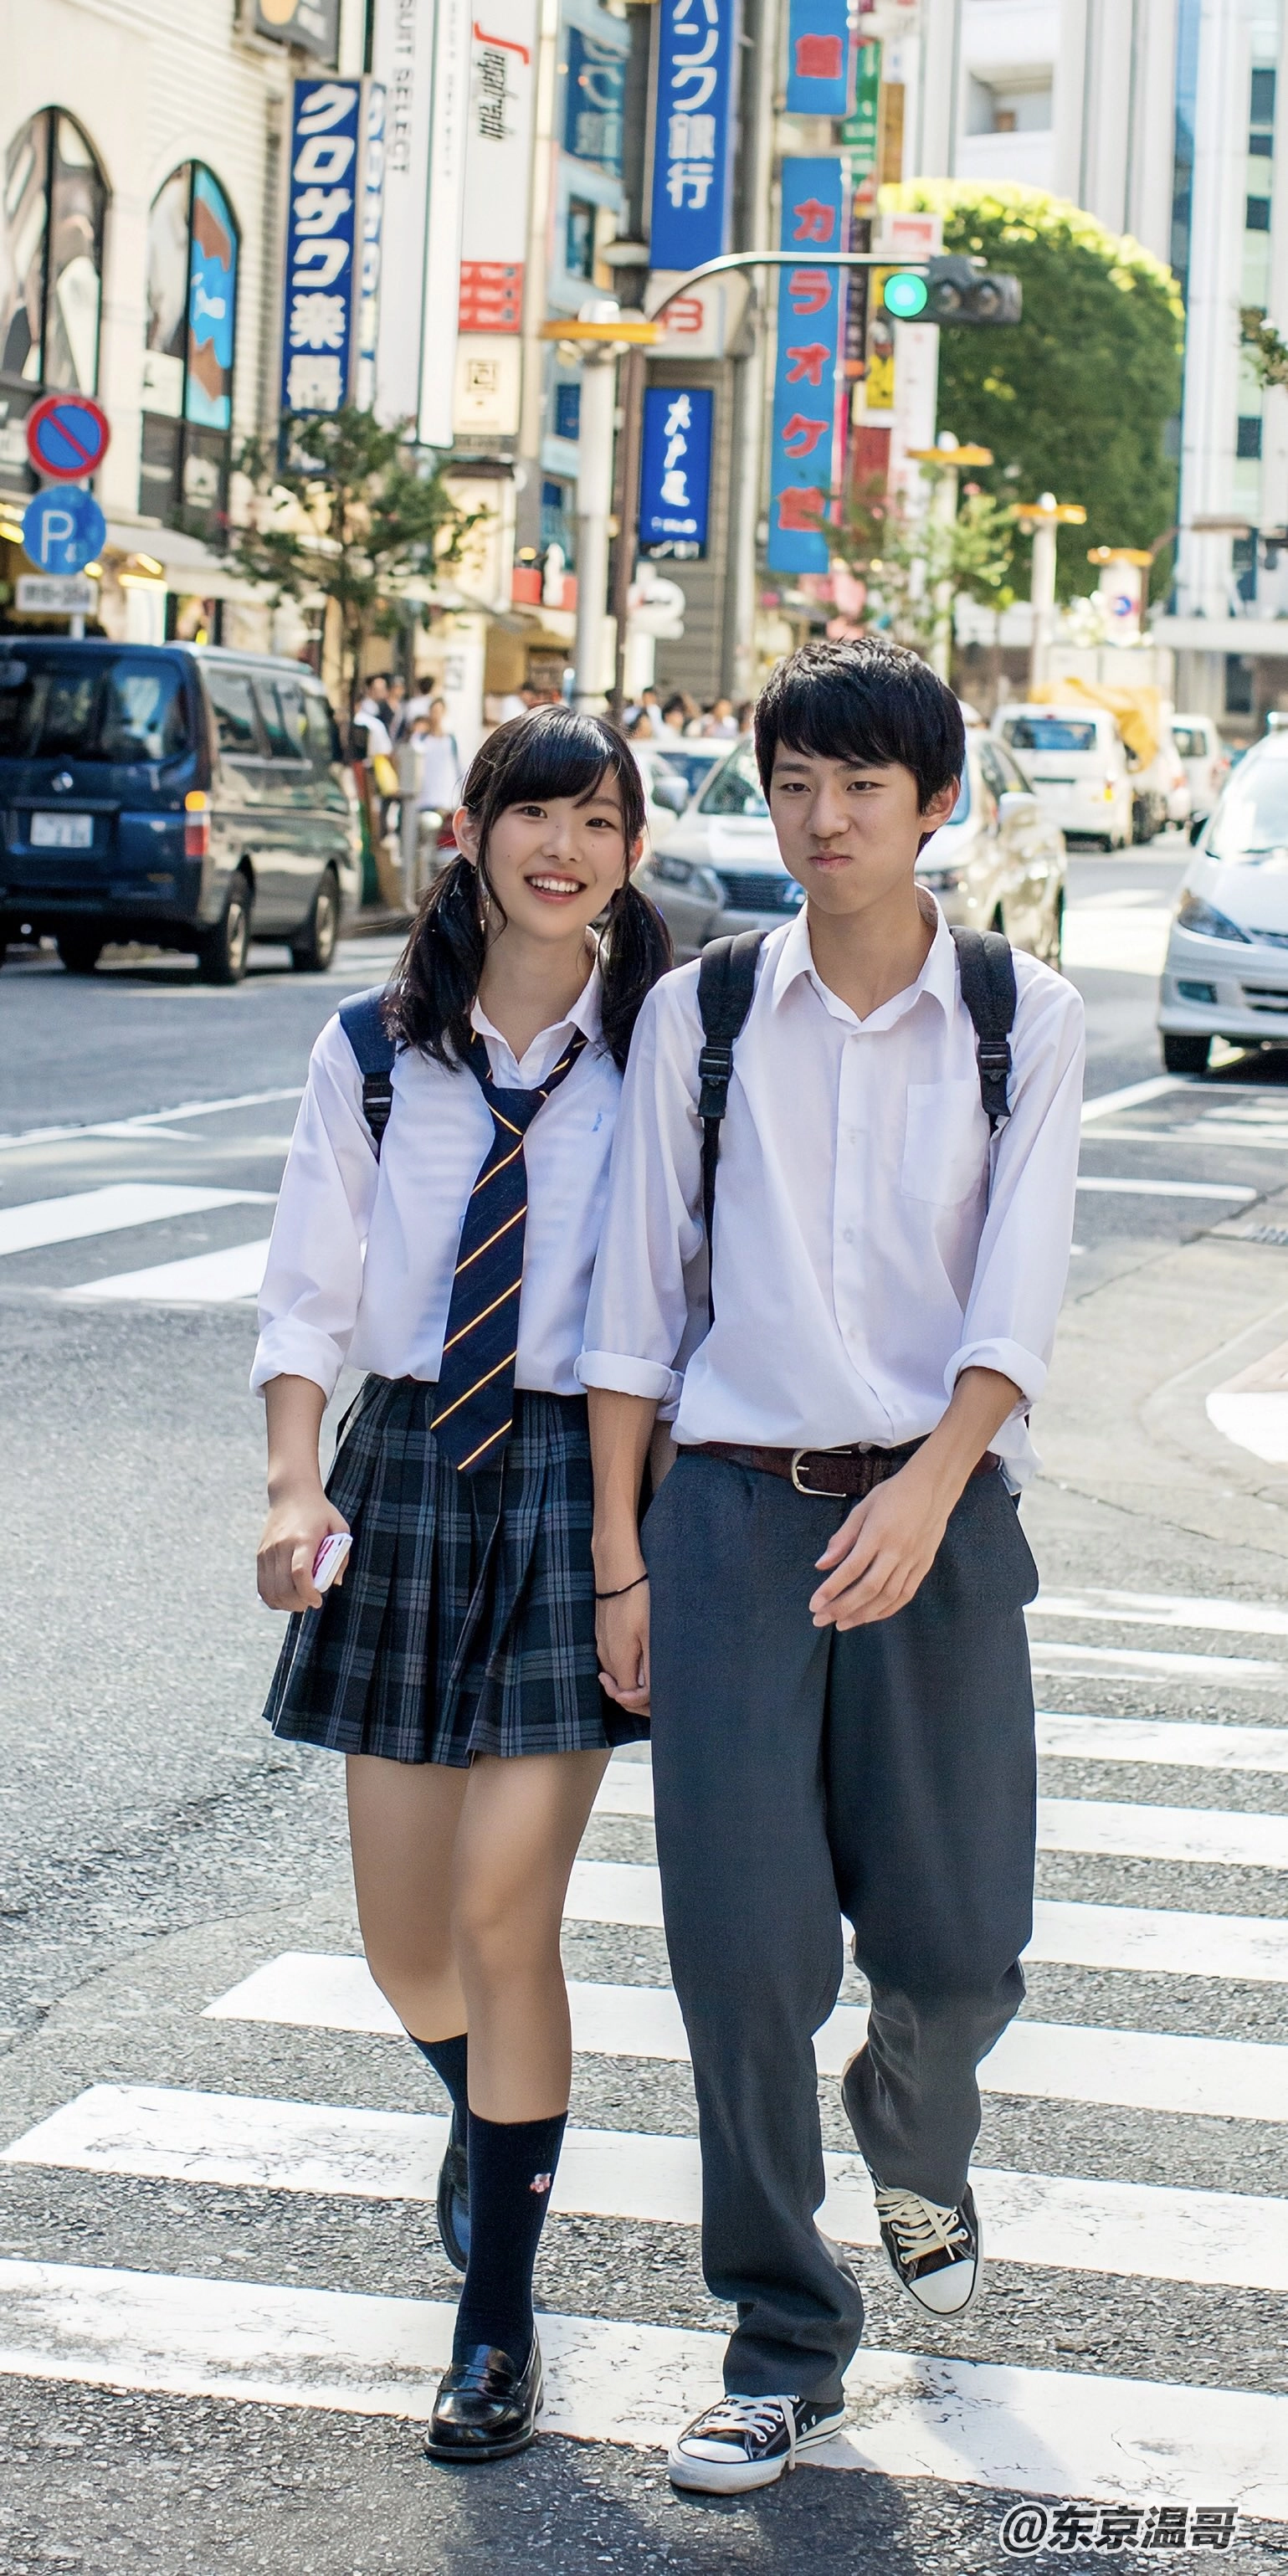 ストリートフォト 恋人たち 日本の街並み